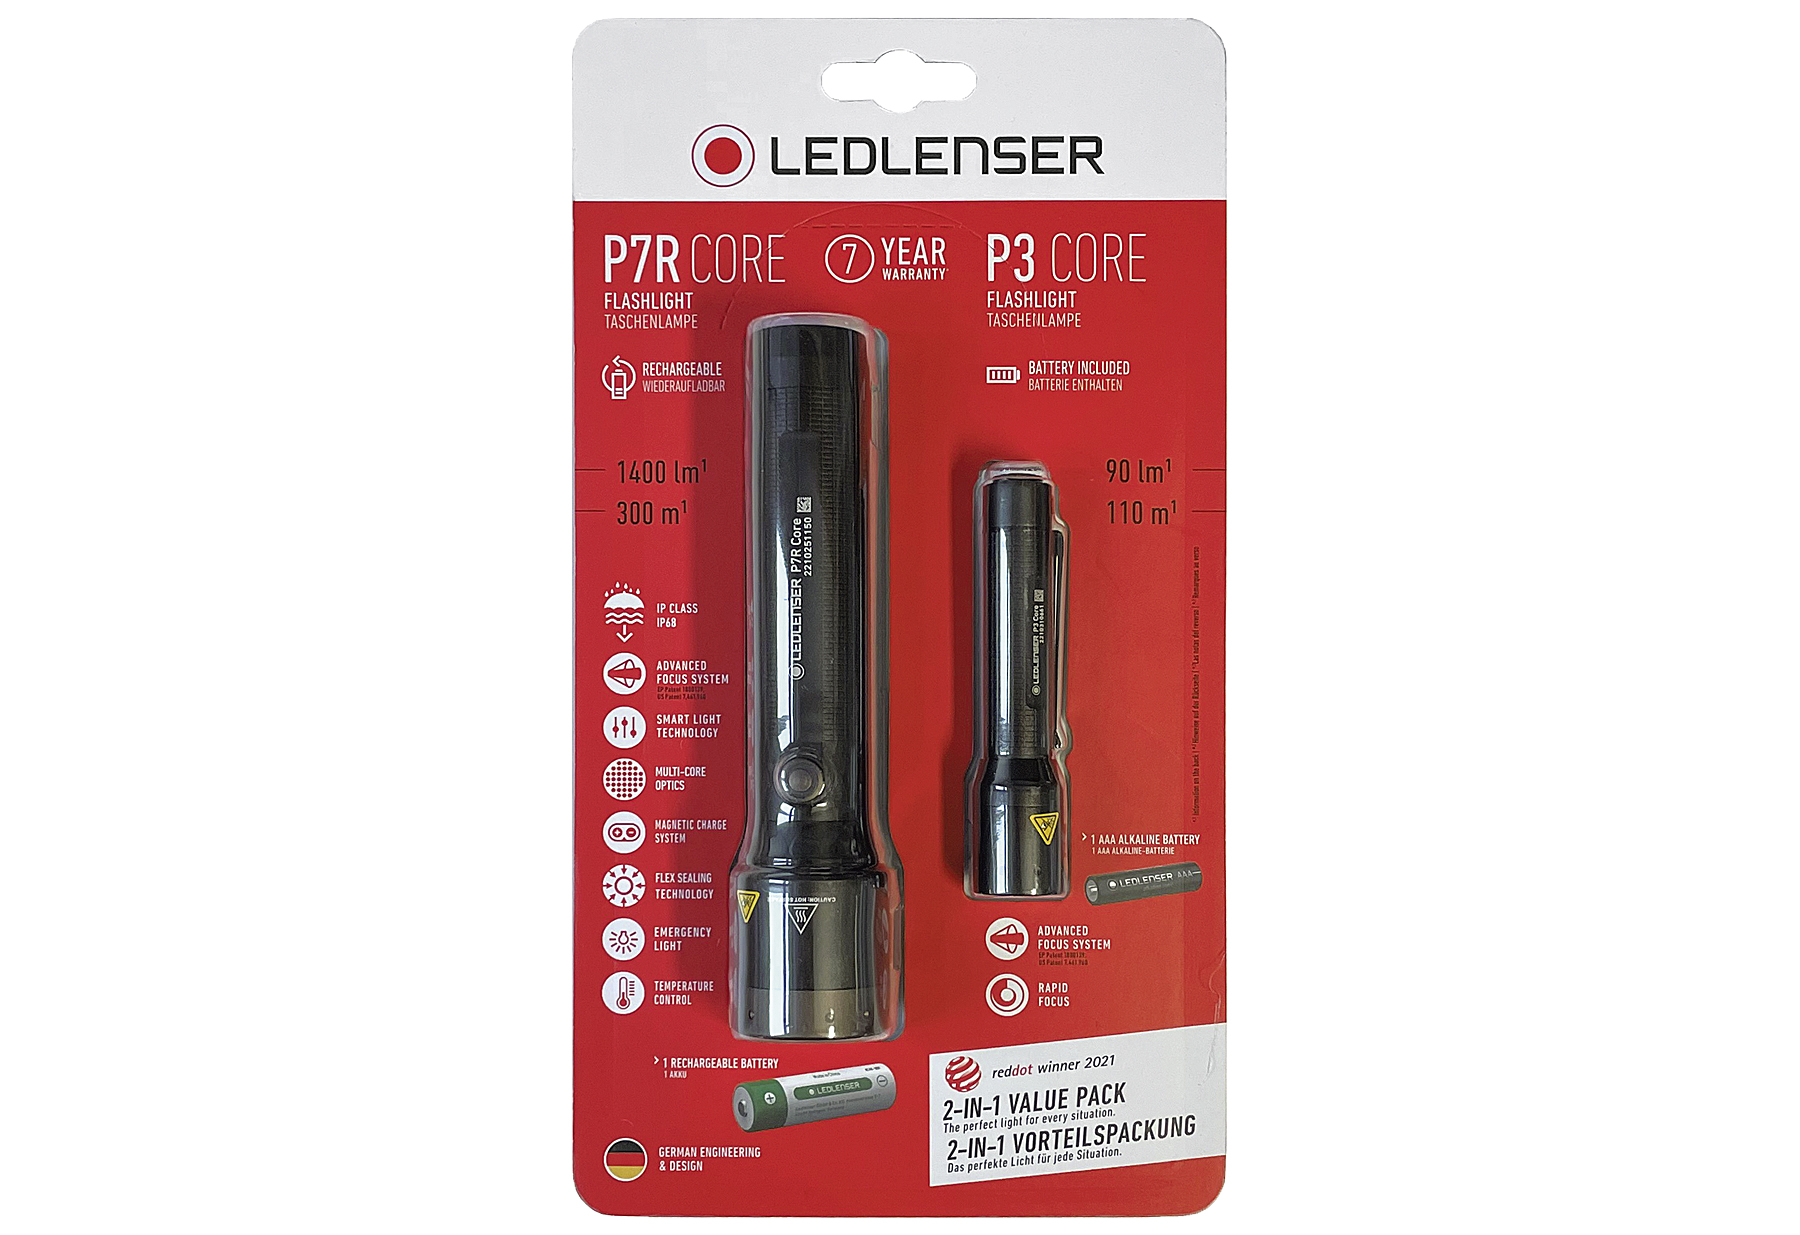 LED LENSER Taschenlampe Set P7R_P3